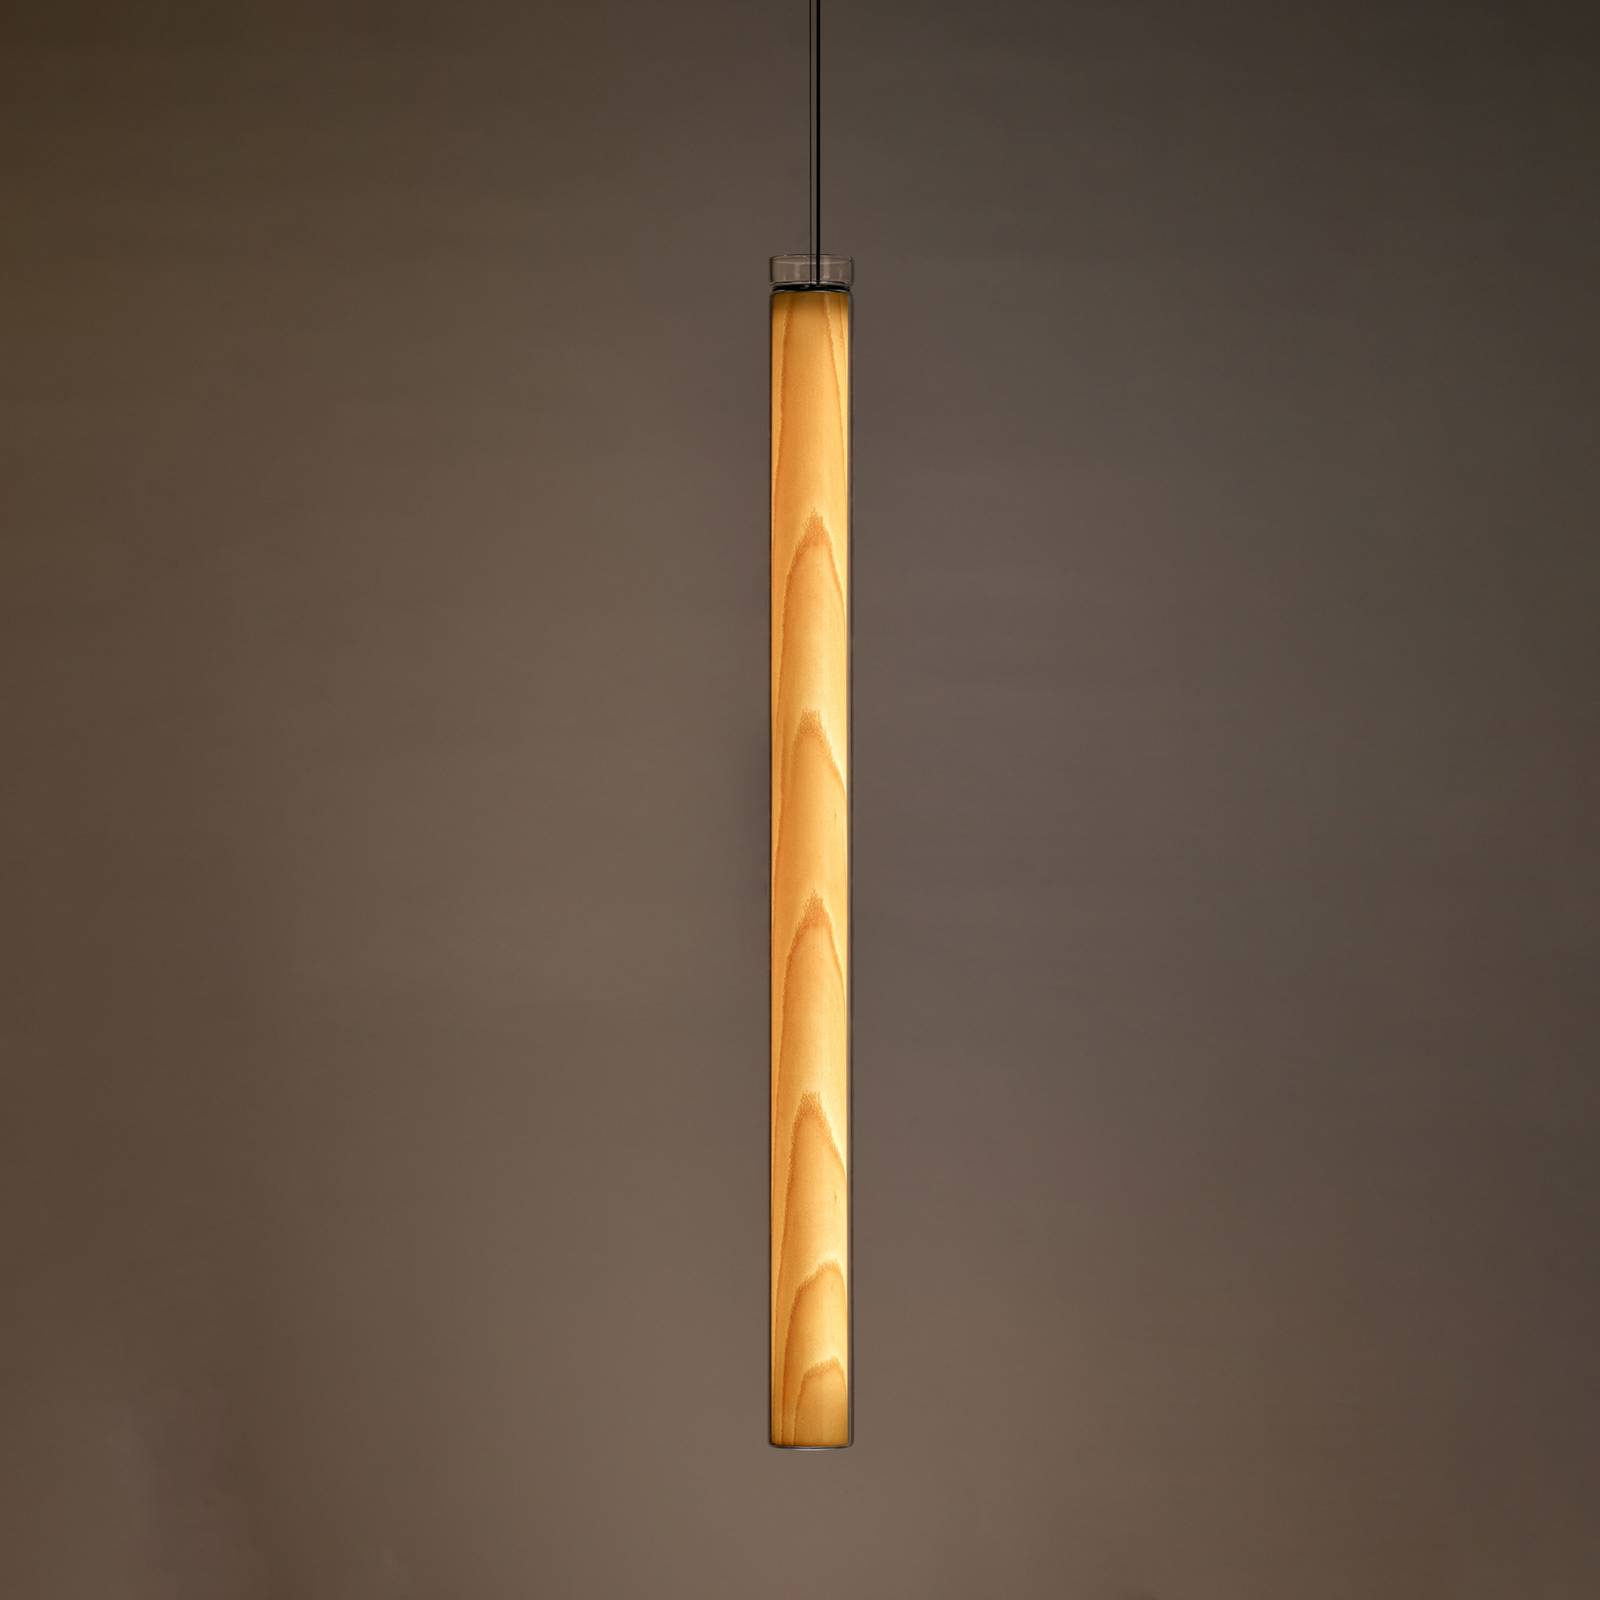 LZF Estela SV LED-Pendellampe, 90 cm, buche natur von LZF LamPS